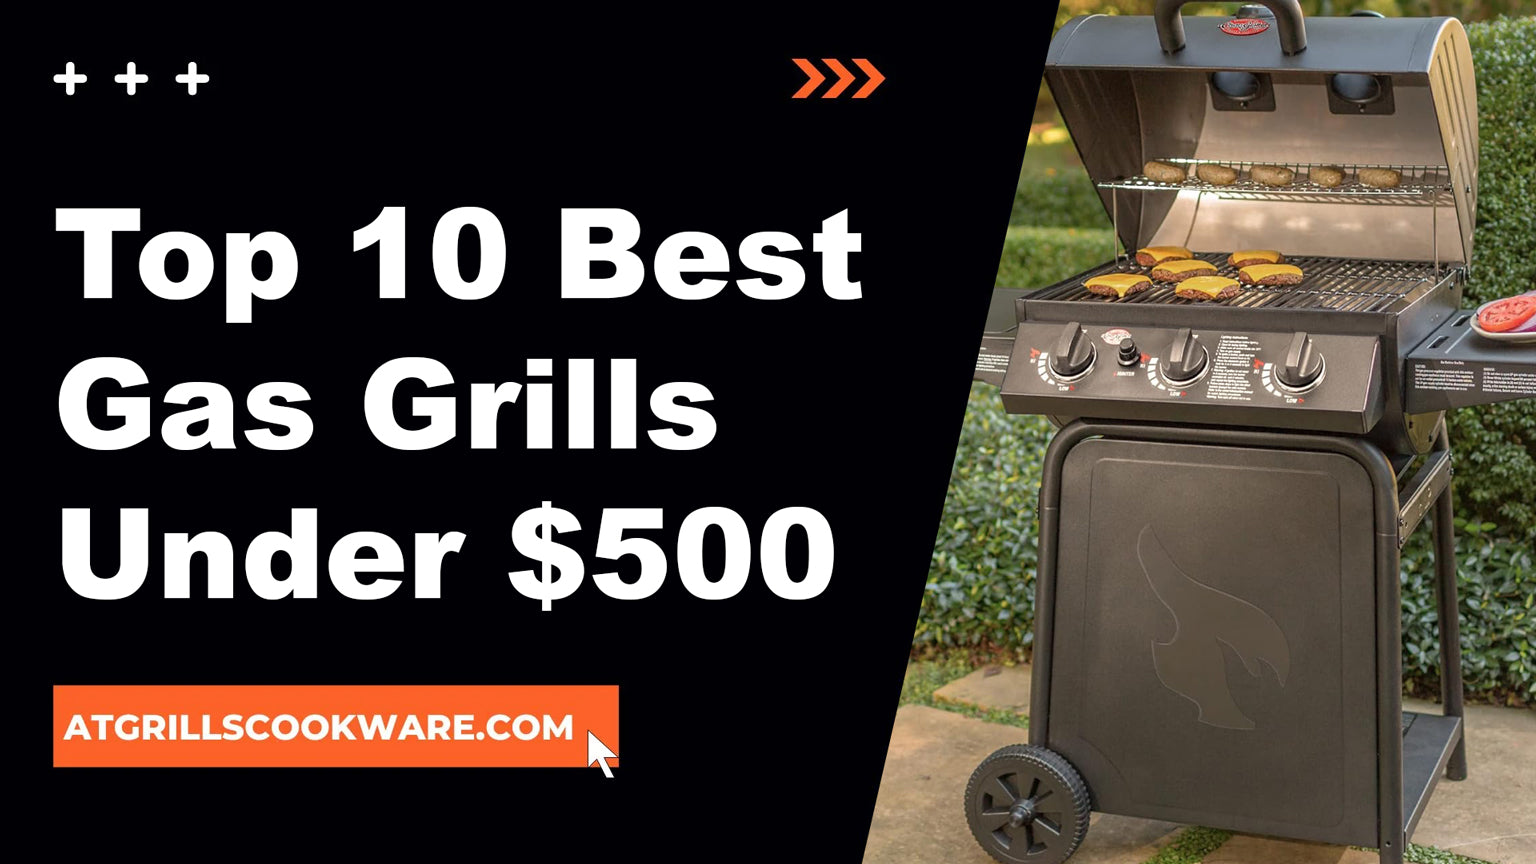 Top 10 Best Gas Grills Under $500